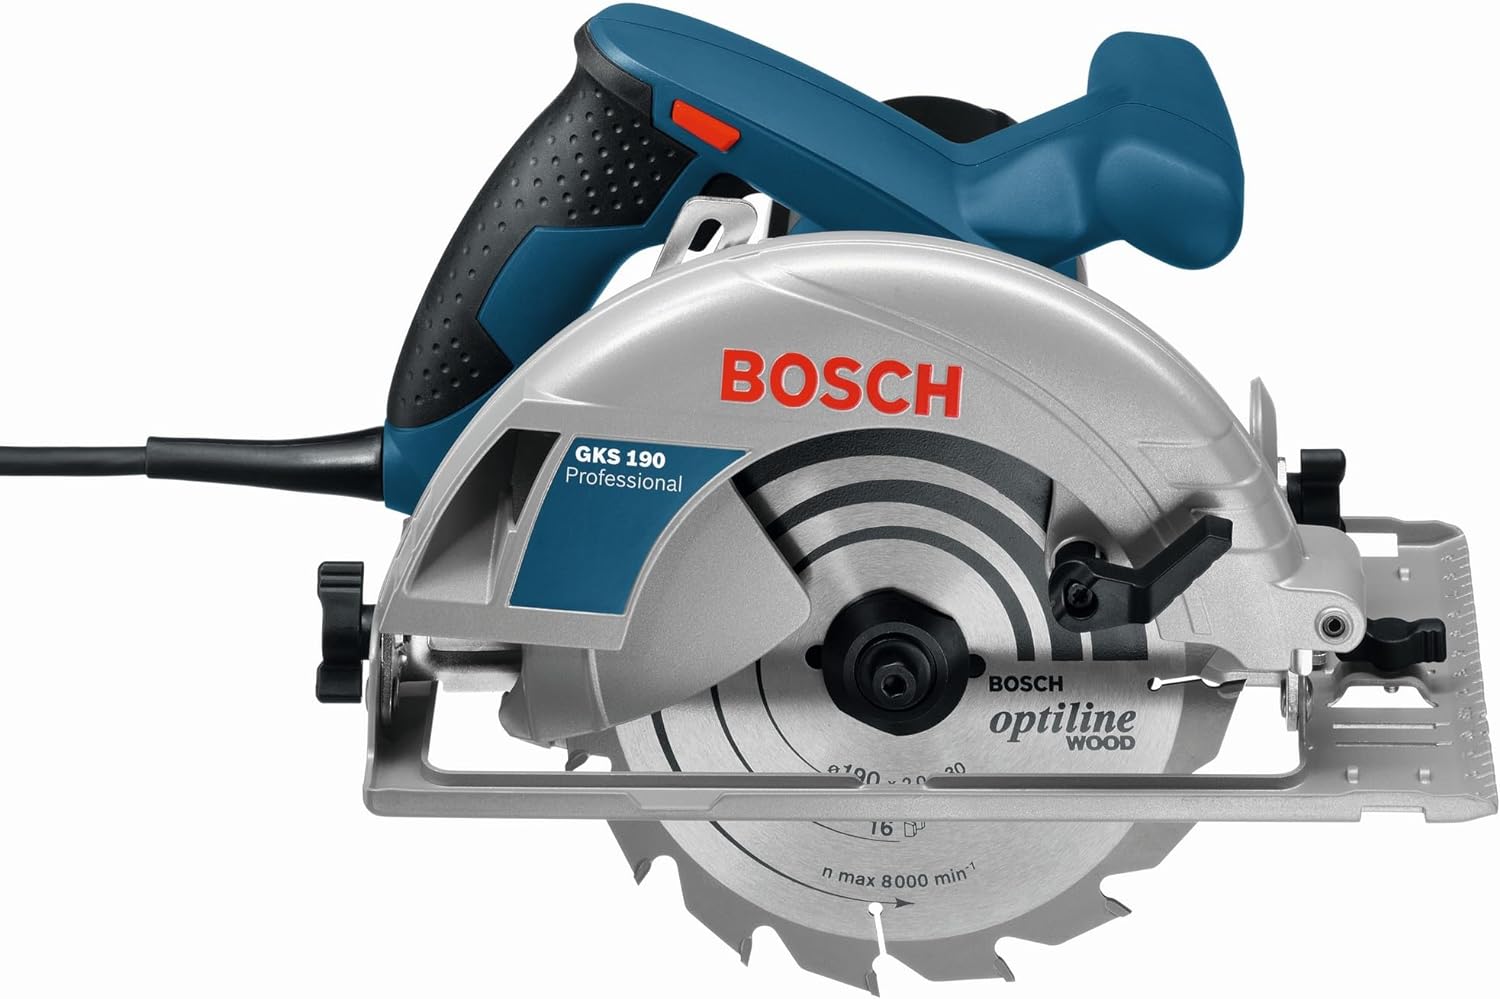 Bosch Professional Handkreissäge GKS 190 (mit 1 Sägeblatt 190 mm, 70 mm Schnitttiefe, 1,400 W) blau, 0601623000